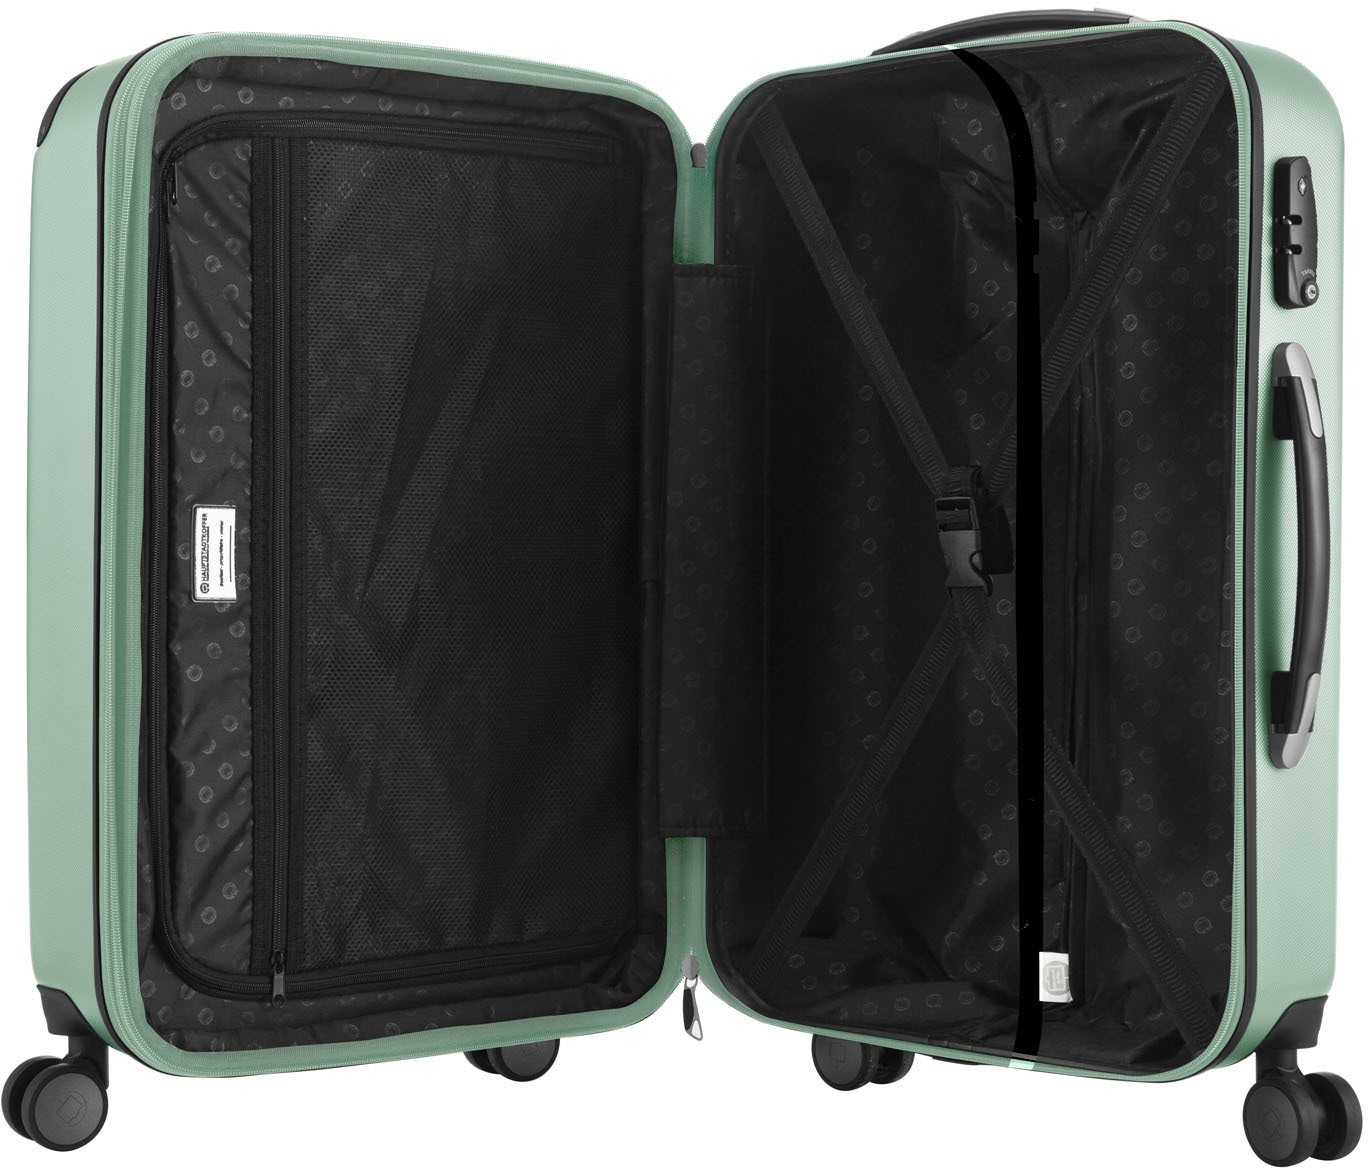 Hauptstadtkoffer Hartschalen-Trolley »Spree, 65 cm, mint«, 4 Rollen, Hartschalen-Koffer Koffer mittel groß Reisegepäck TSA Schloss